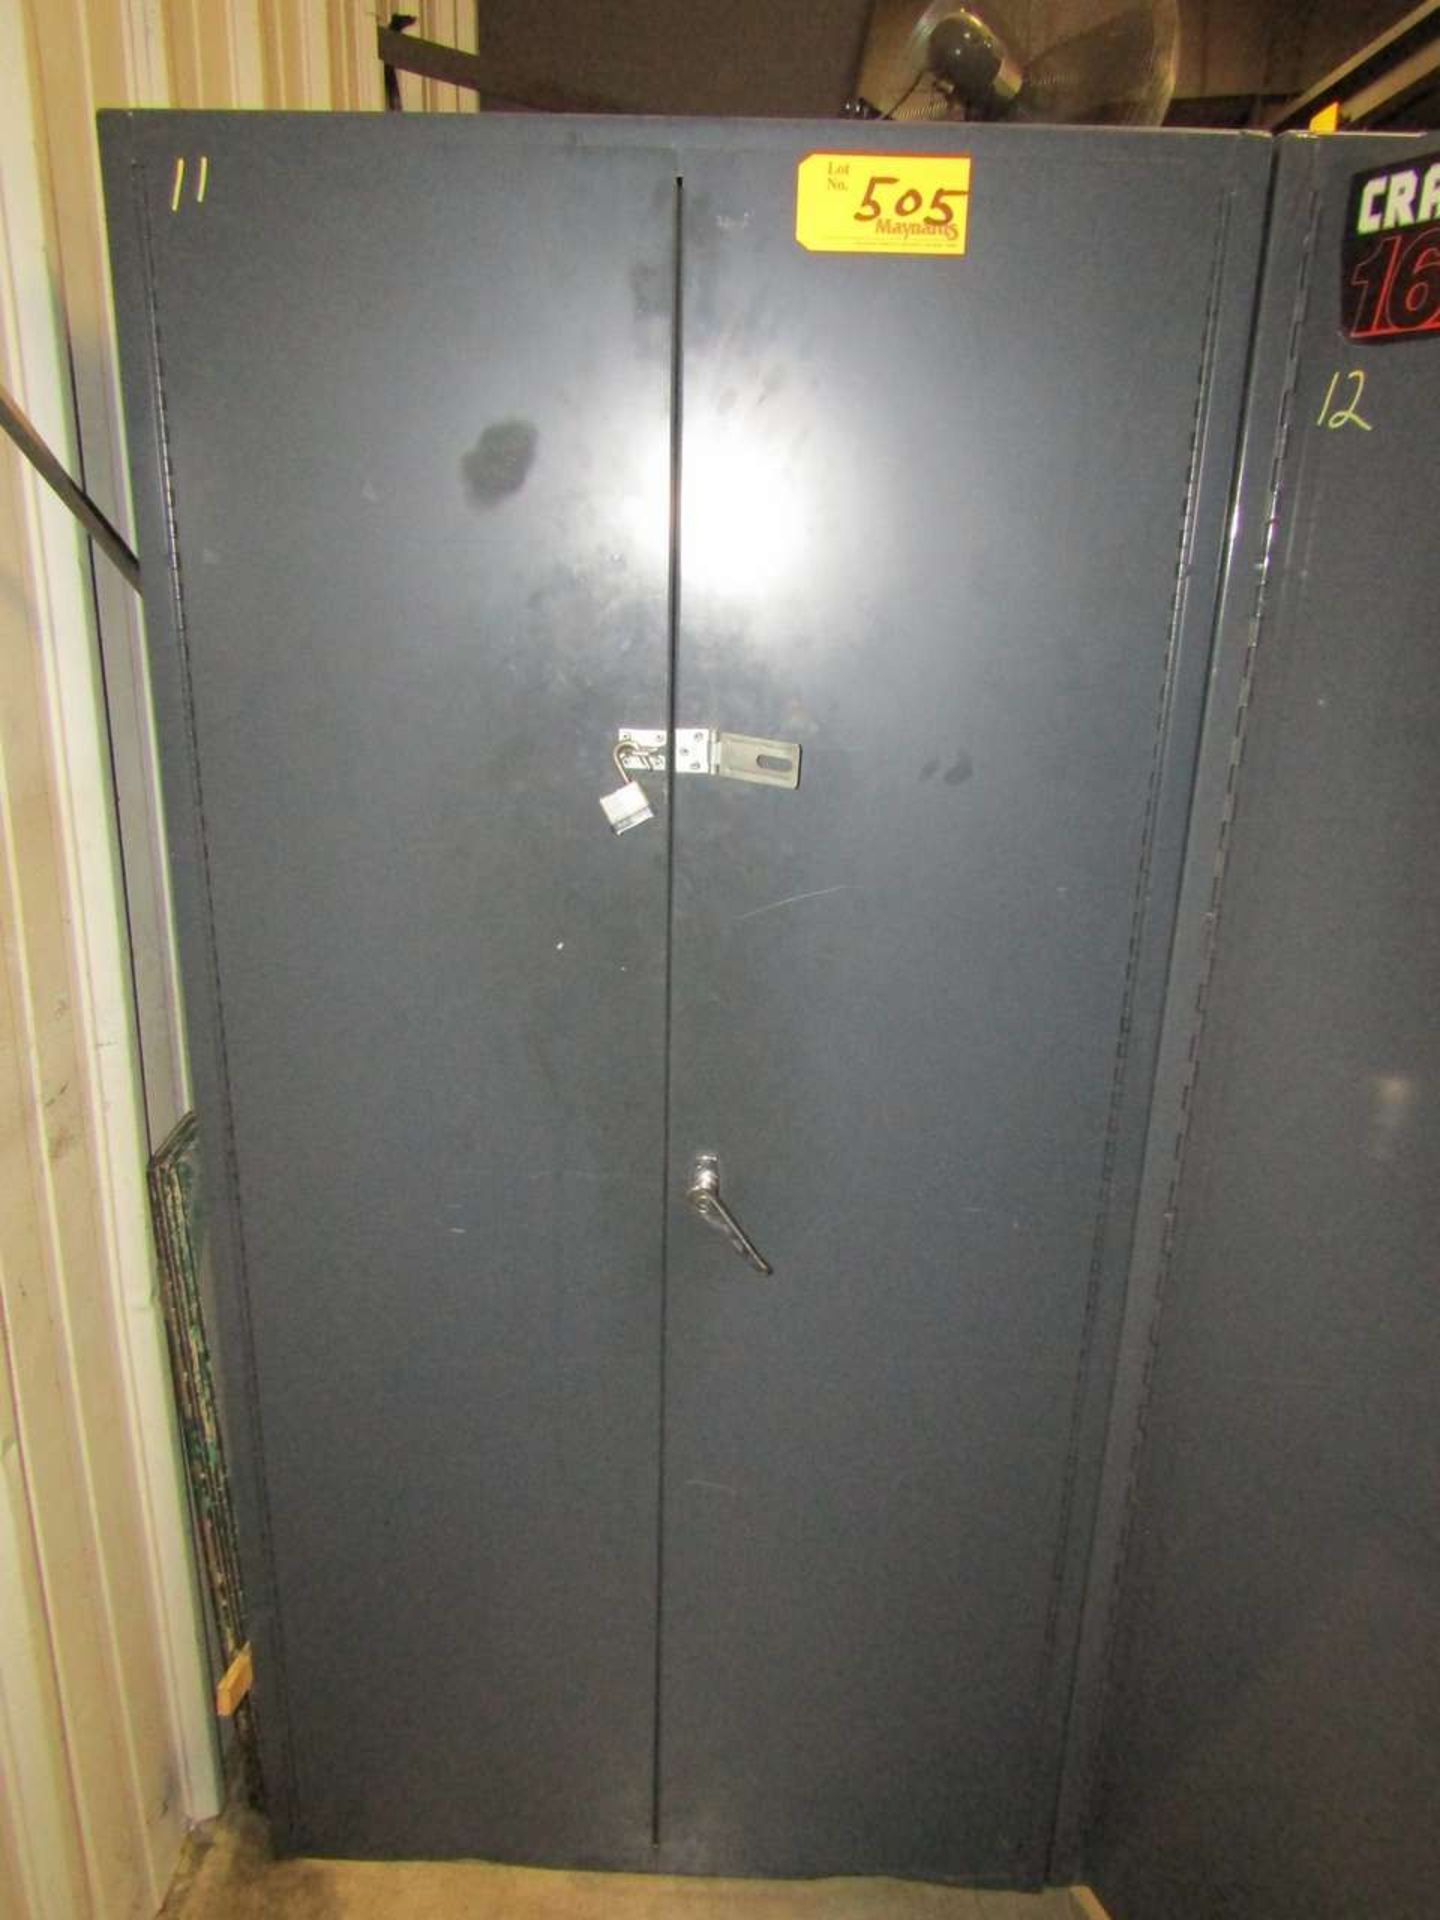 2-Door Parts Cabinet